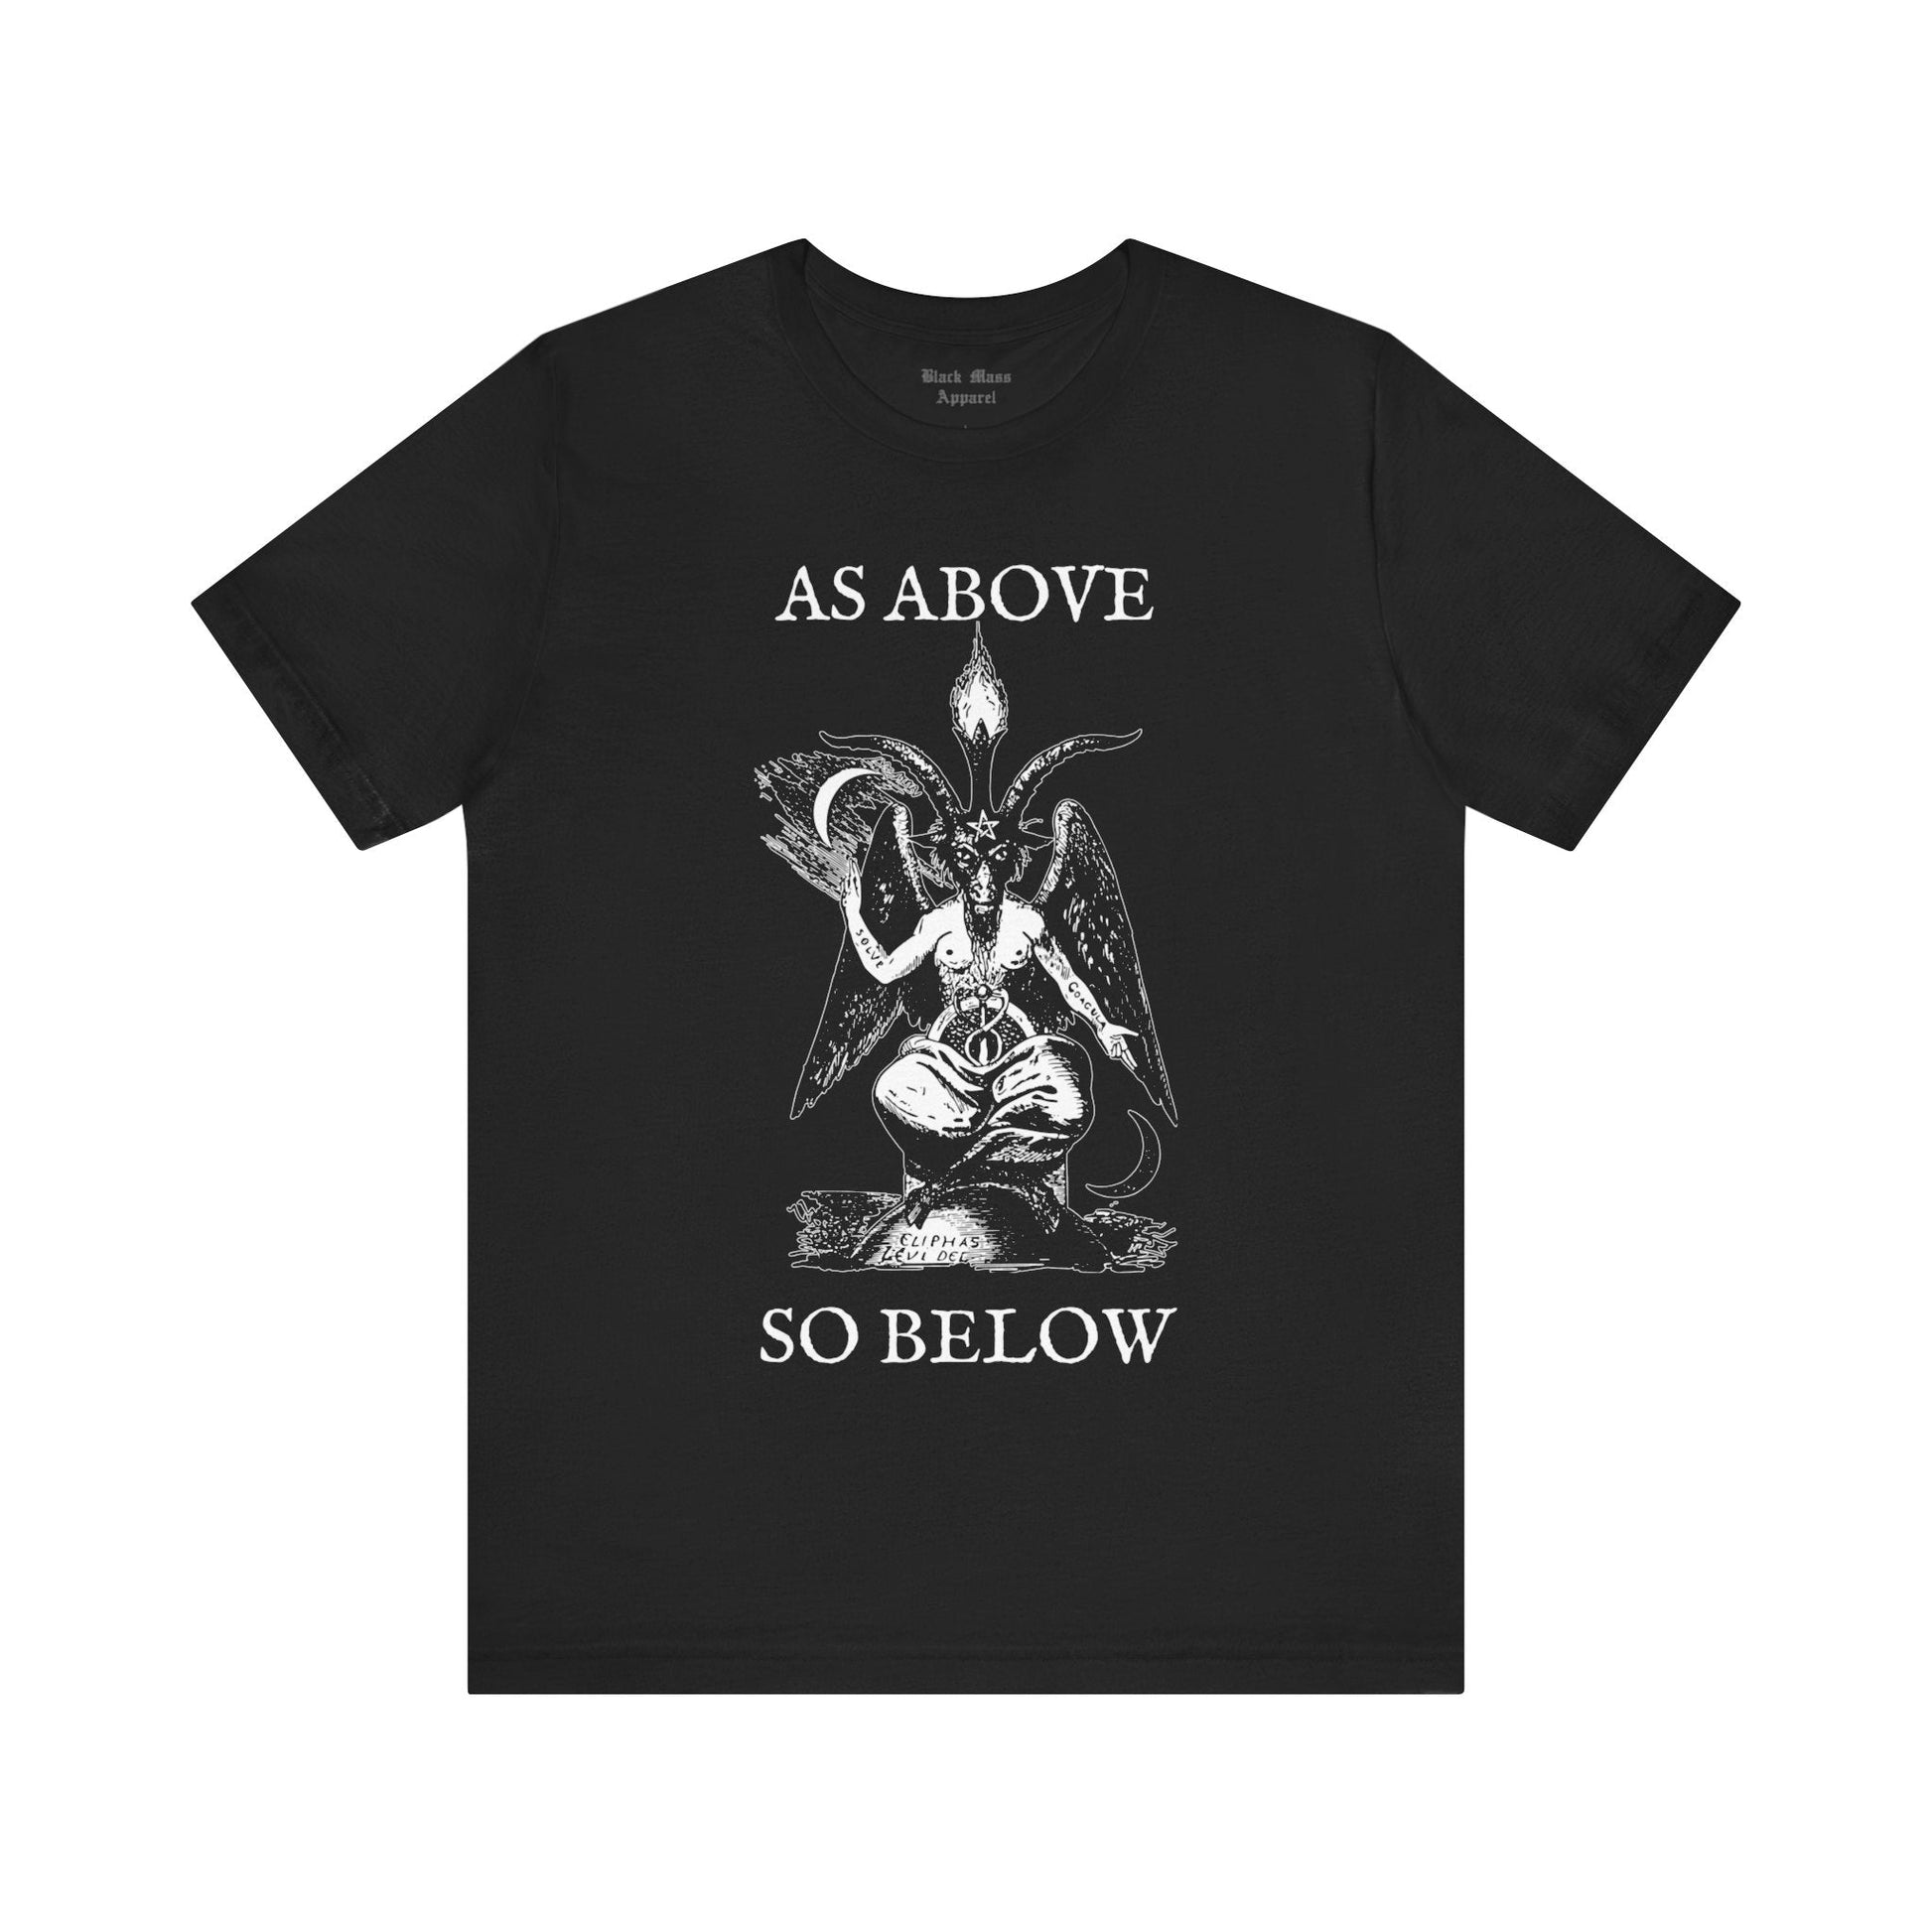 As Above, So Below - Black Mass Apparel - T-Shirt